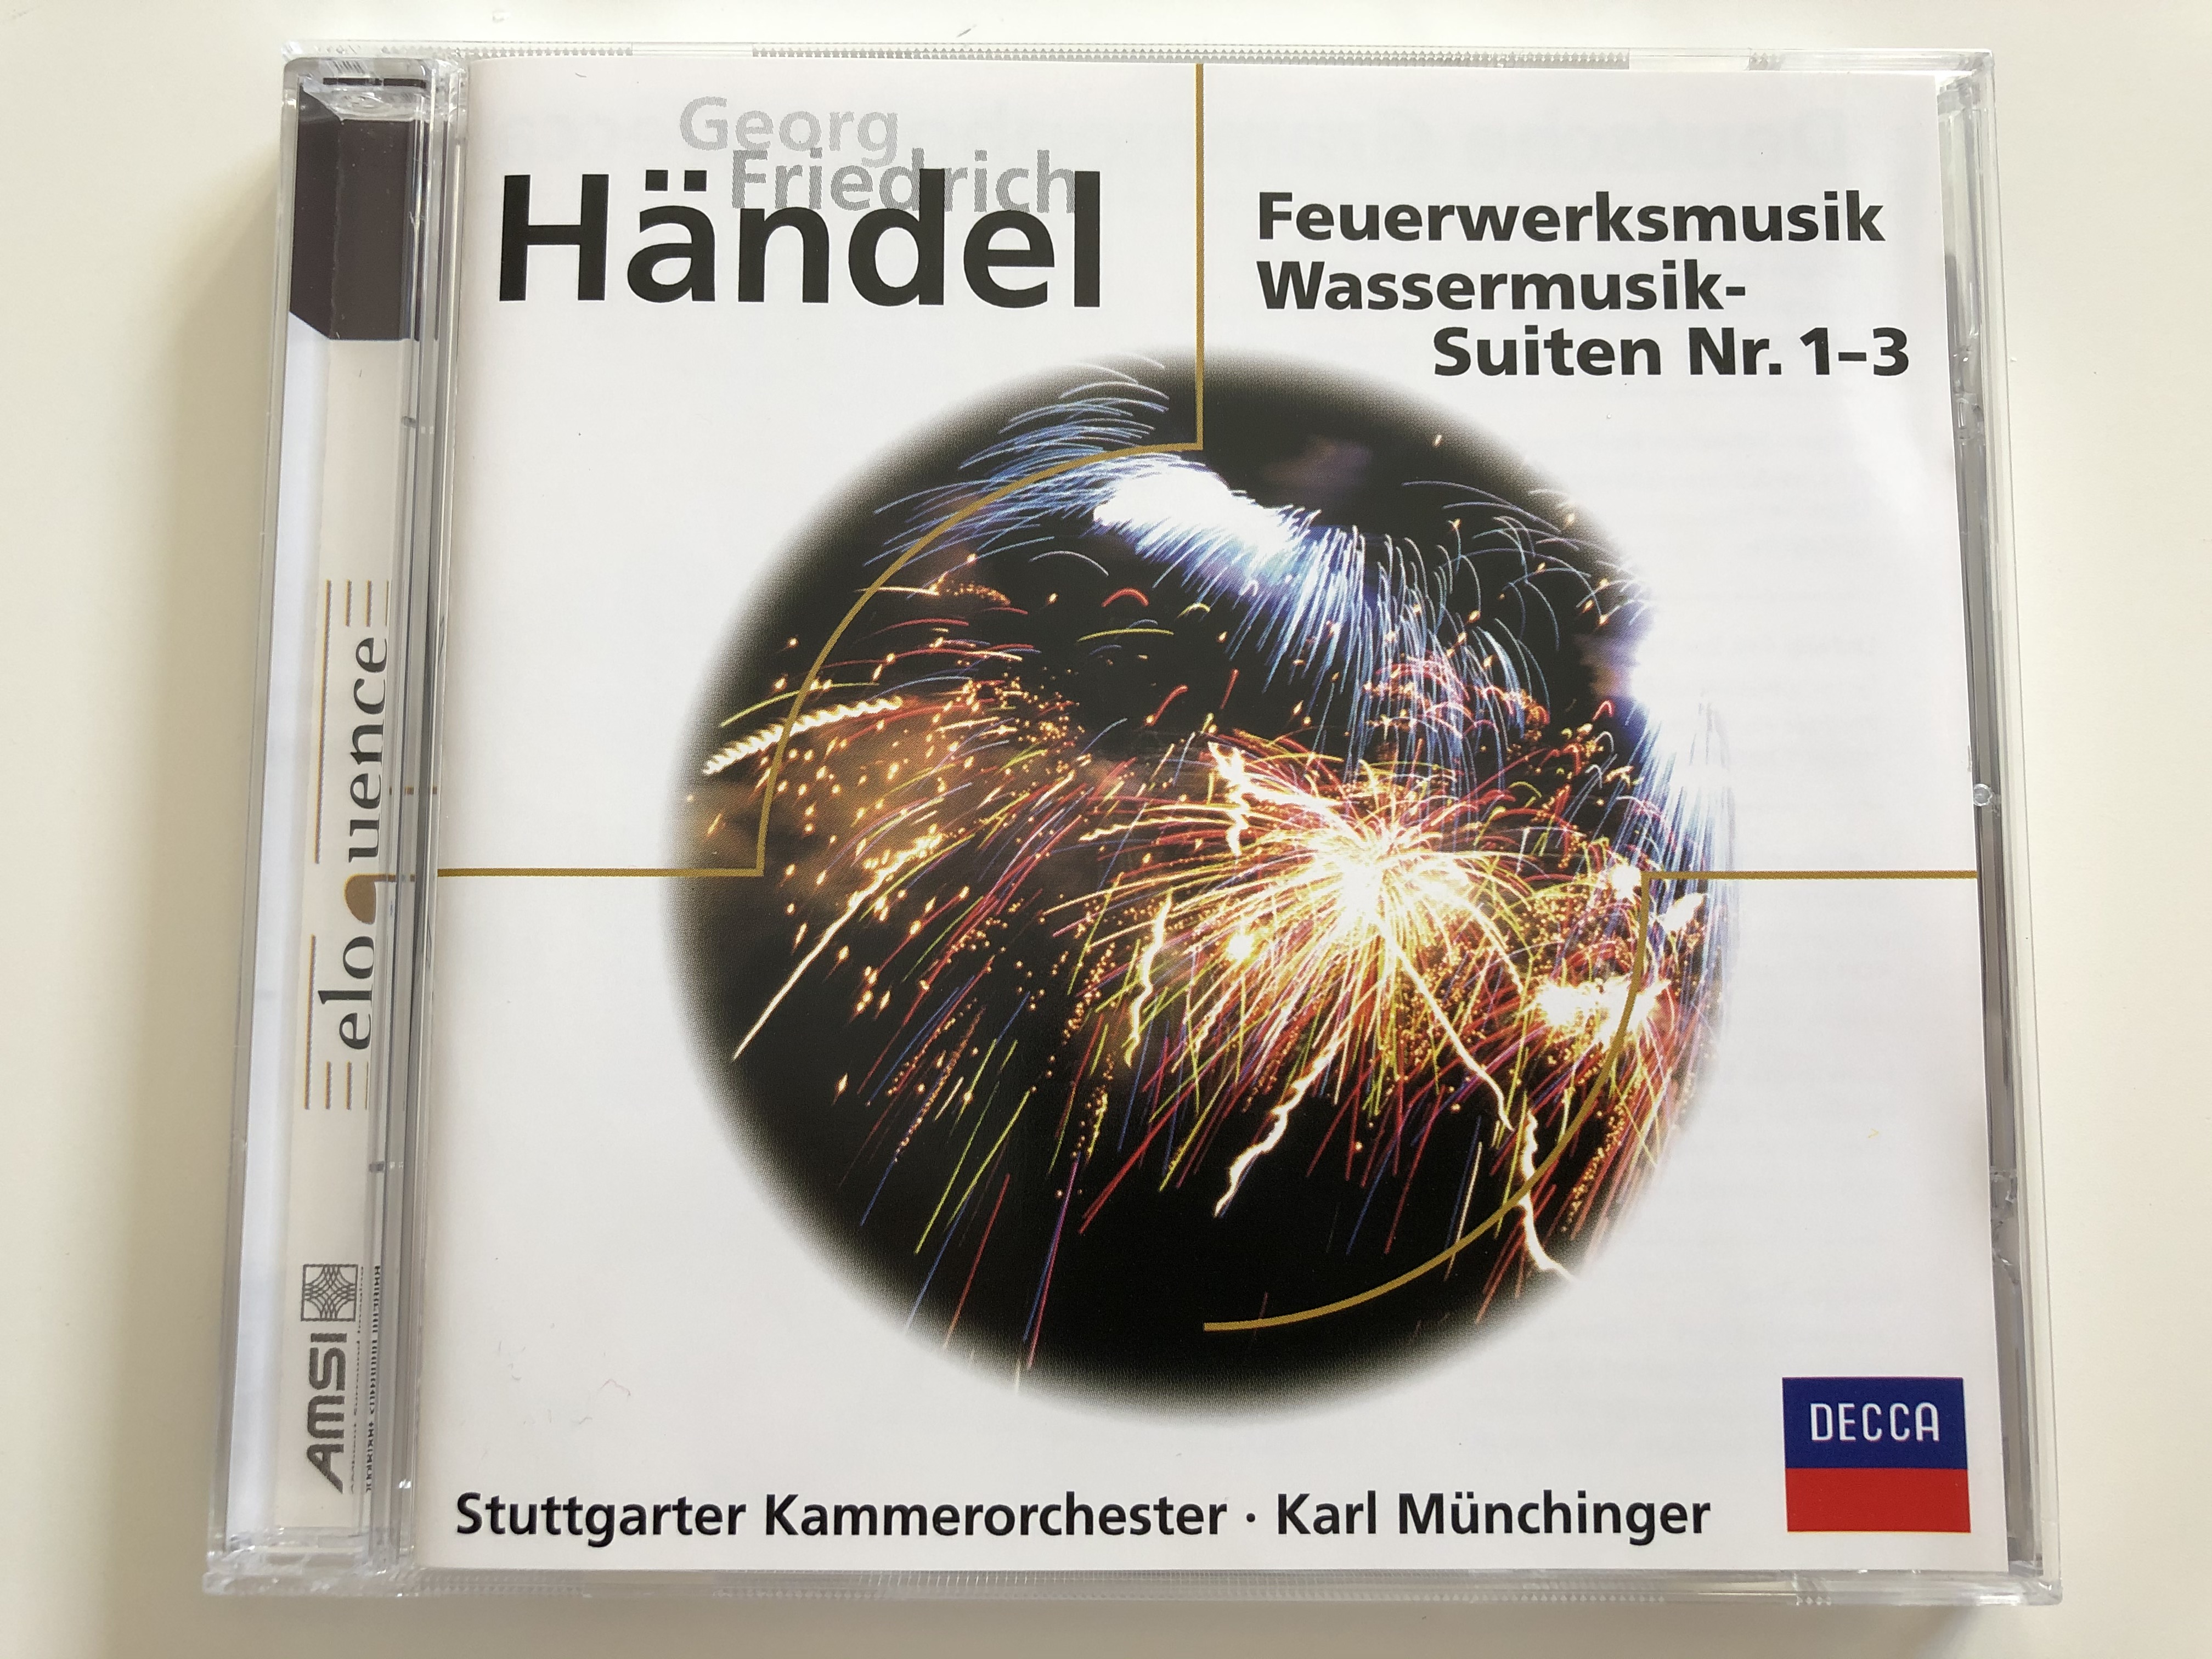 georg-friedrich-h-ndel-feuerwerksmusik-wassermusik-suiten-nr.-1-3-stuttgarter-kammerorchester-karl-m-nchinger-decca-audio-cd-458-647-2-1-.jpg